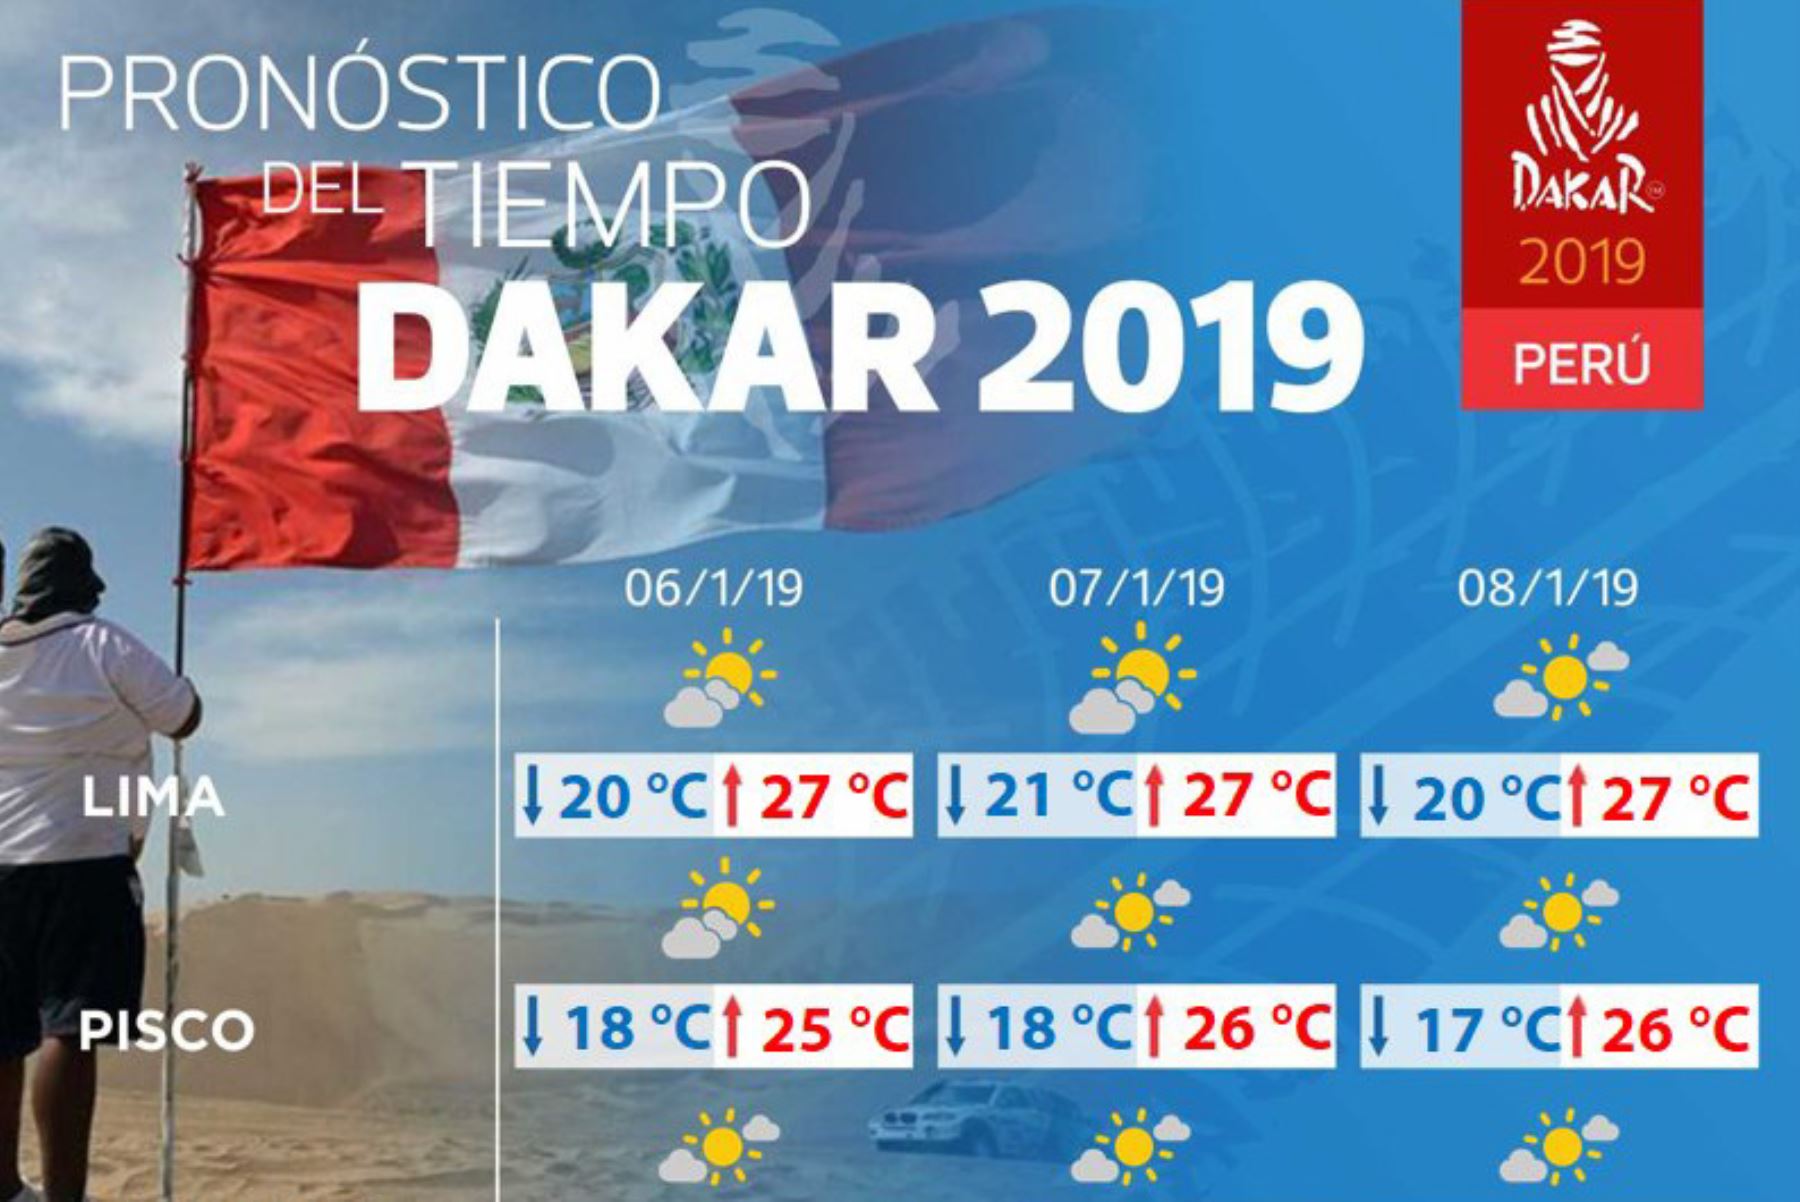 Rally Dakar 2019: conoce el pronóstico del clima para la partida mañana domingo